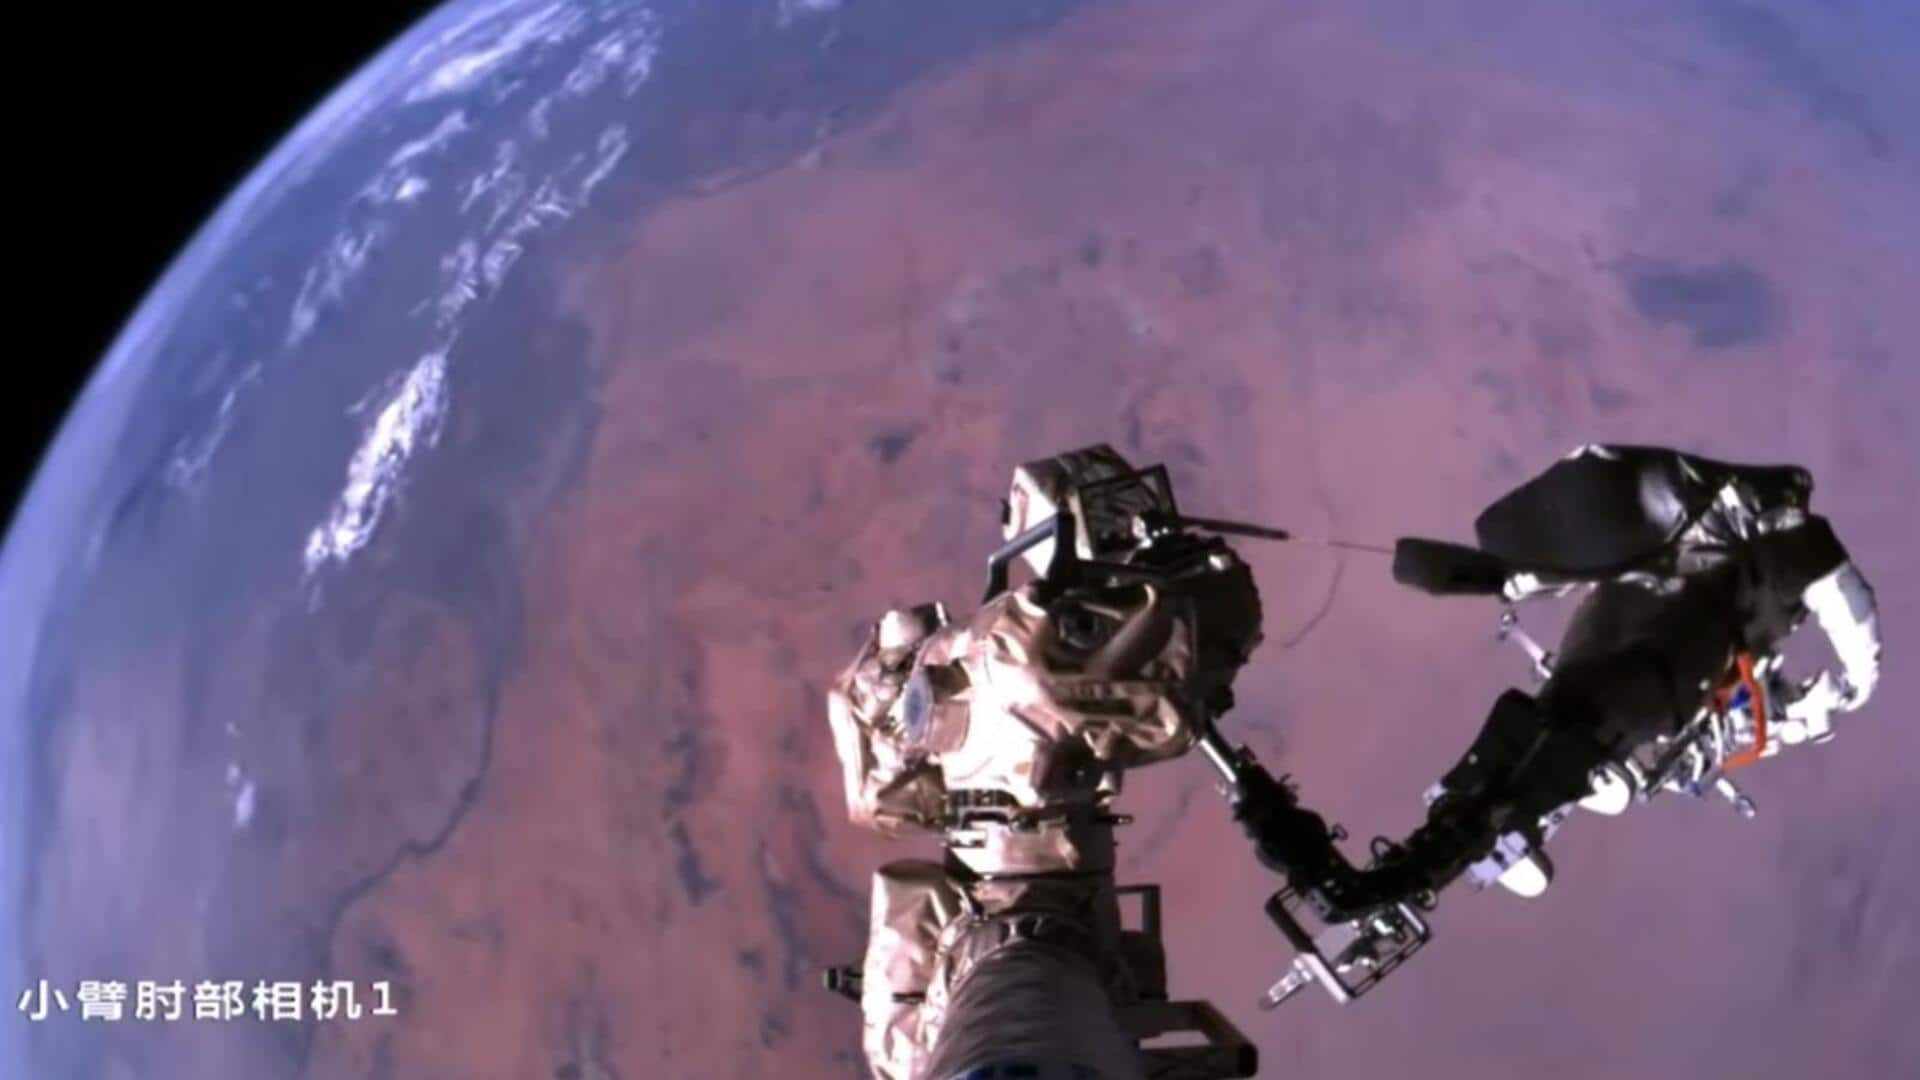 पृथ्वी के ऊपर लटका दिखा अंतरिक्ष यात्री, चीनी अंतरिक्ष एजेंसी ने शेयर किया वीडियो